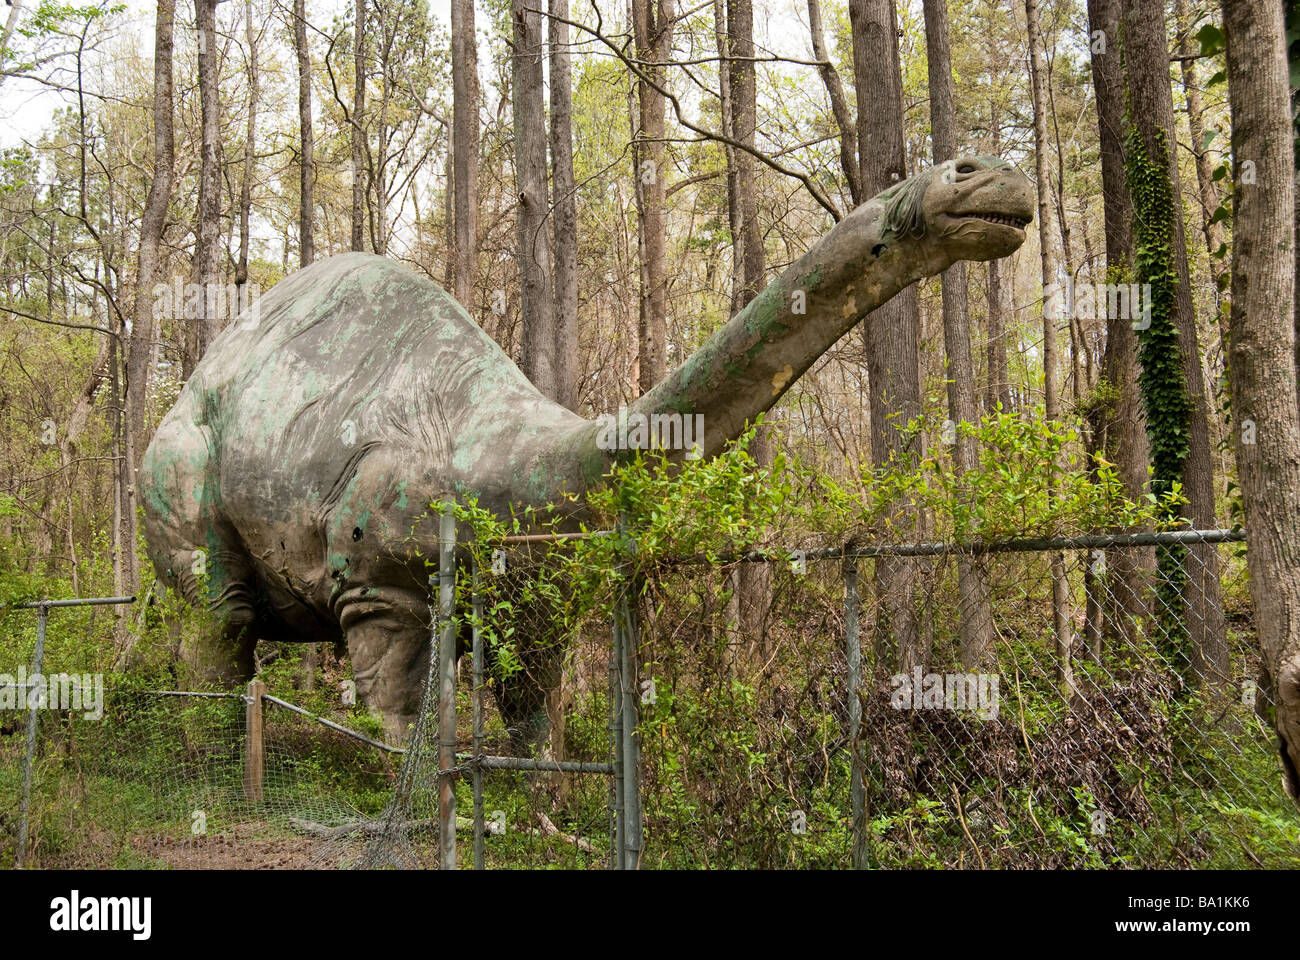 Statue de négligé un dinosaure Brontosaure Banque D'Images